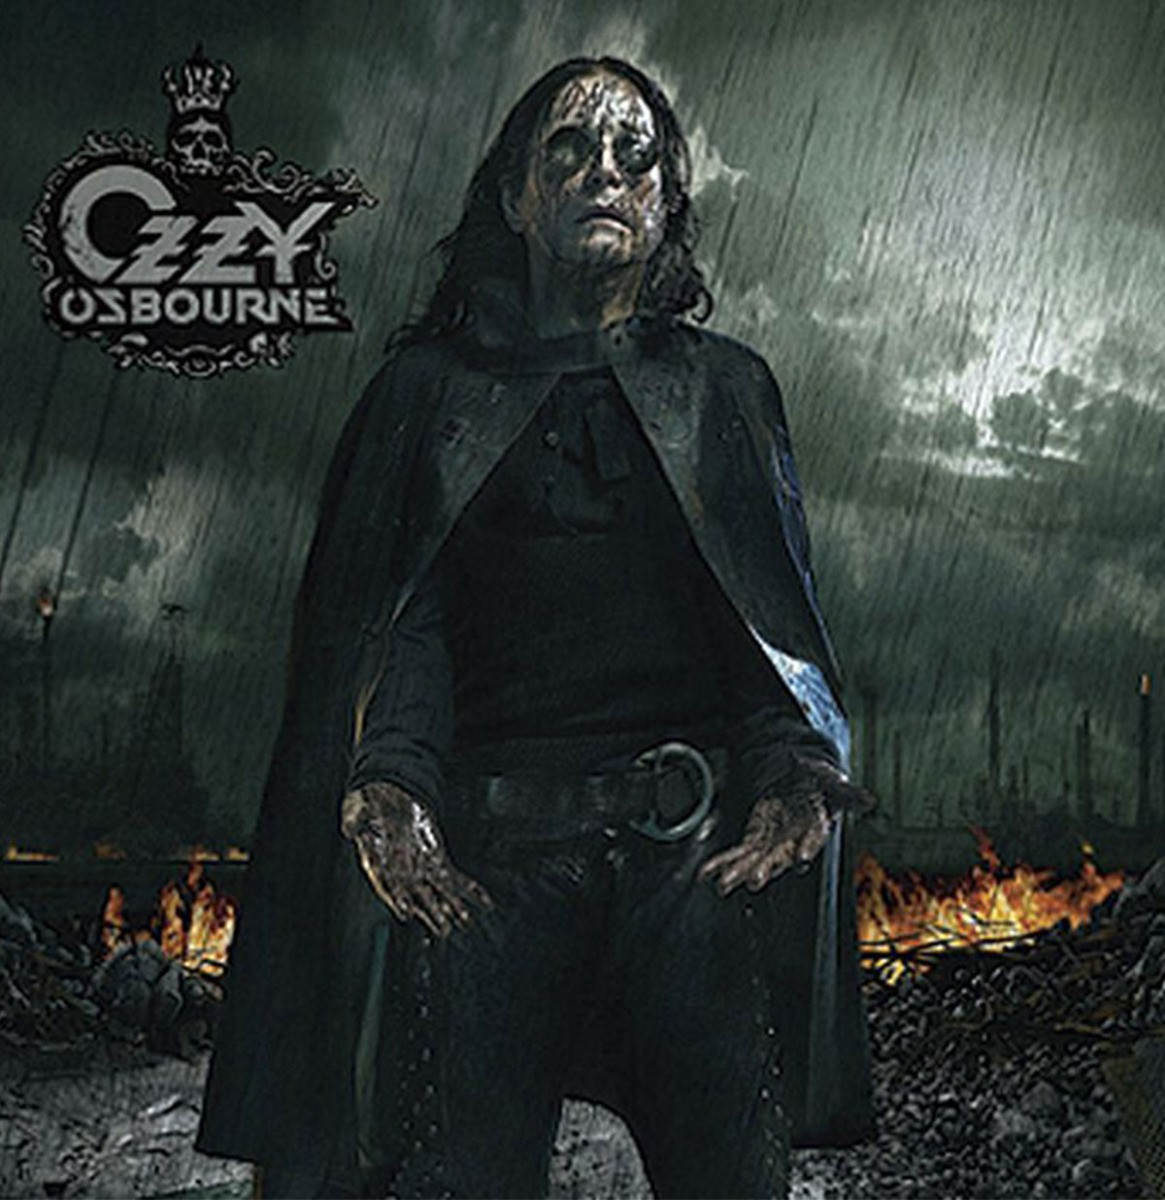 Ozzy Osbourne - Black Rain 2LP